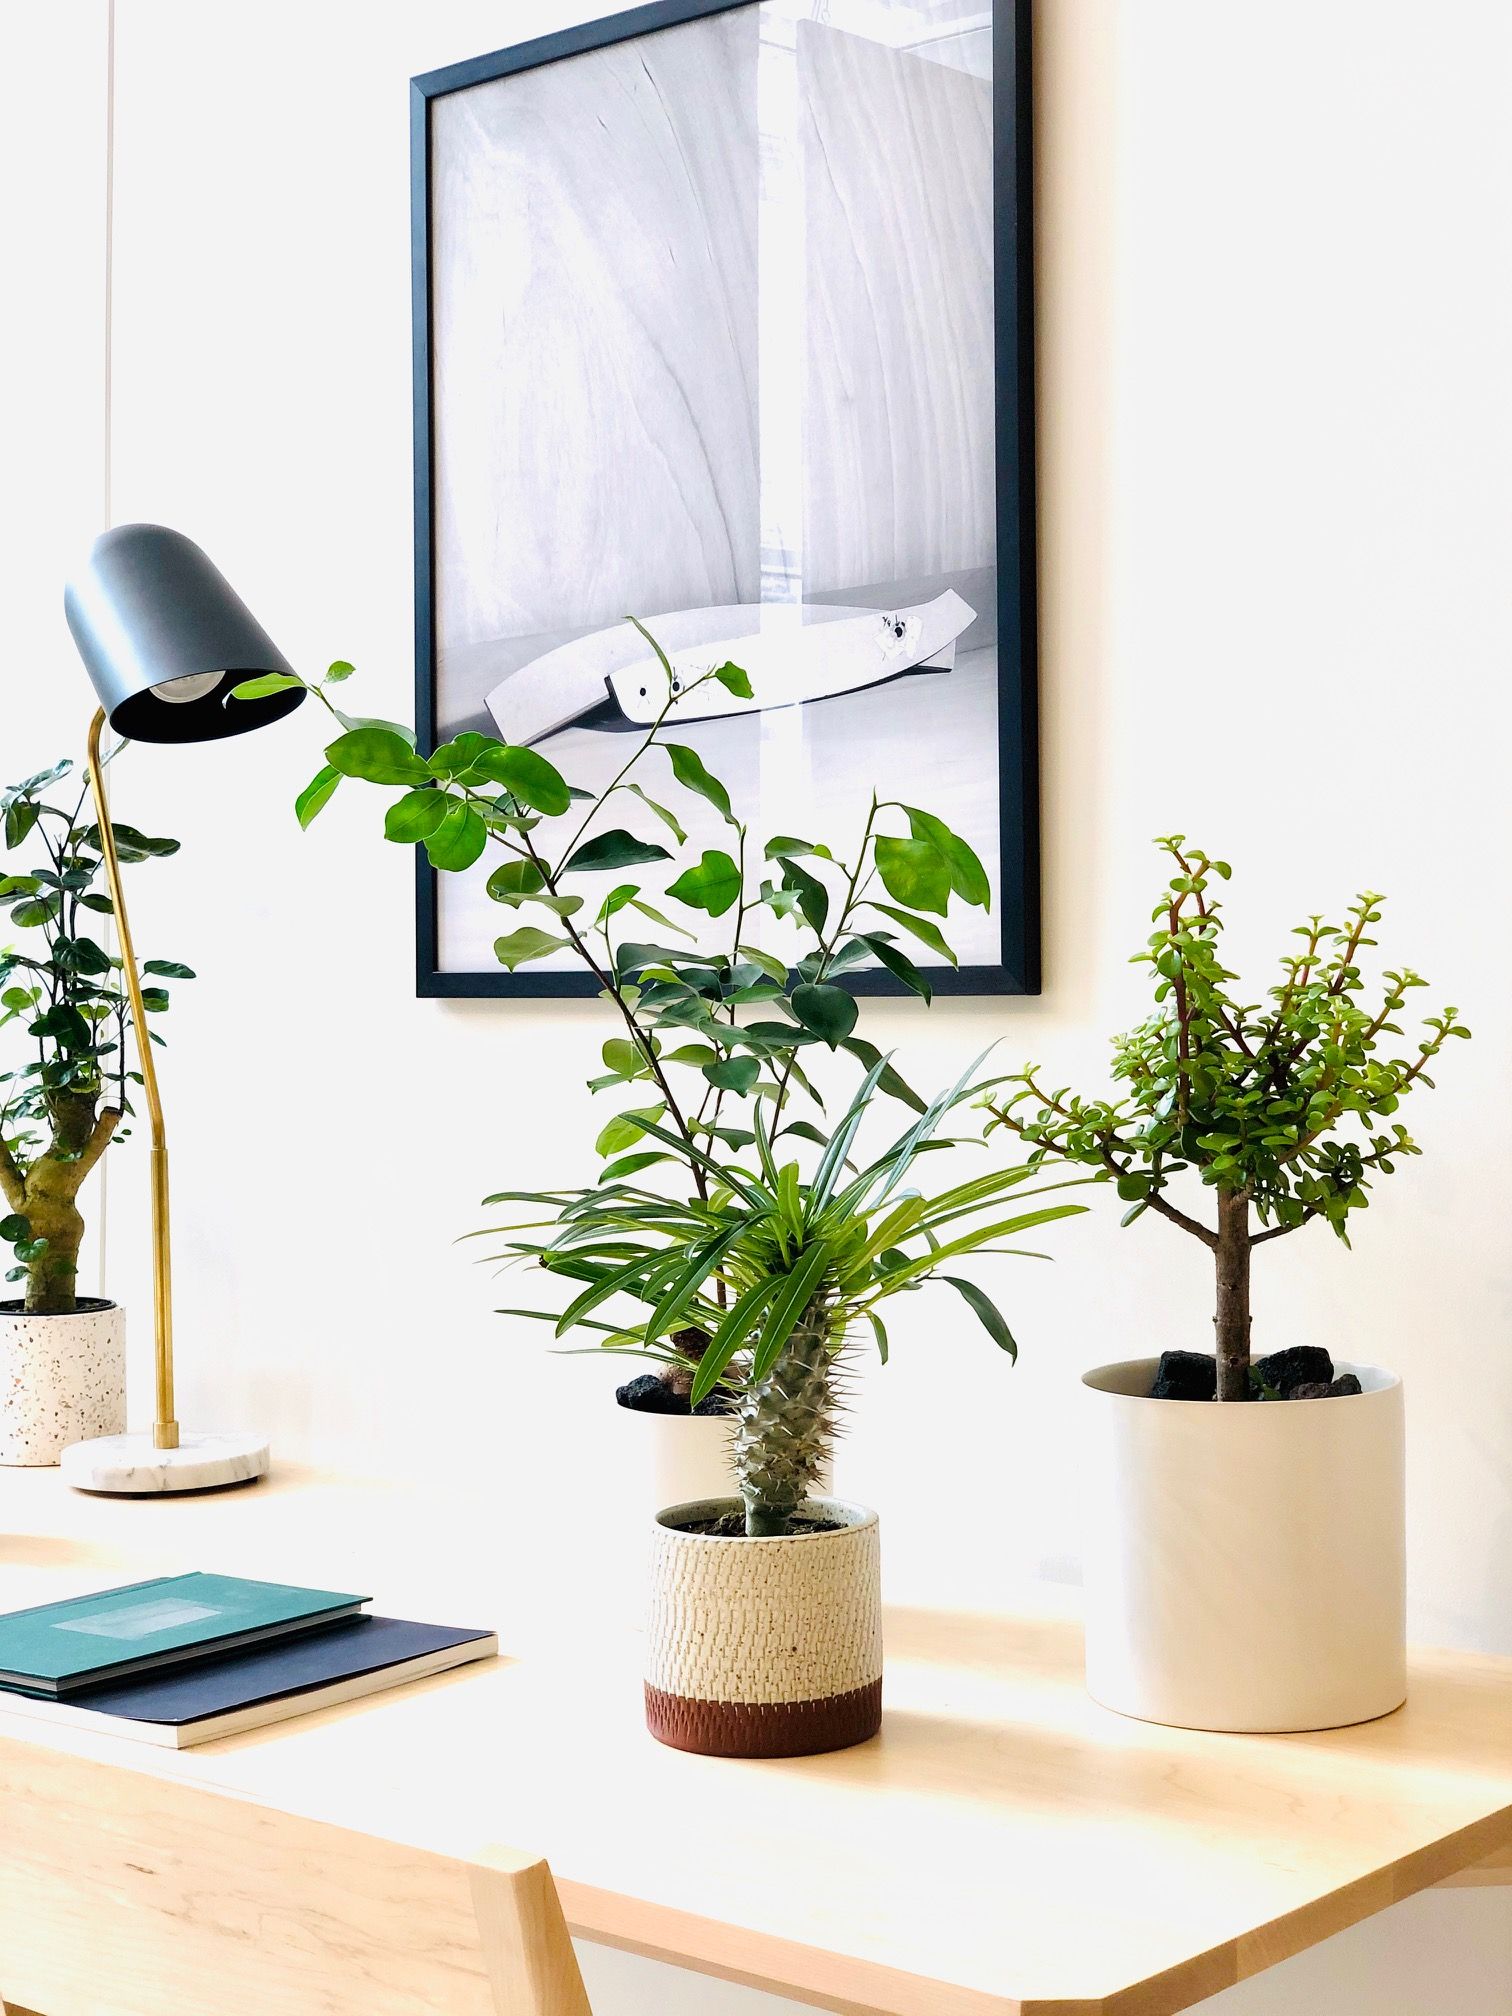 PORTULACARIA AFRA CRASSULA mini bonsaï 15cm bonsaïs en forme de S plantes  vivantes plantes d'intérieur - Fabricants et fournisseurs